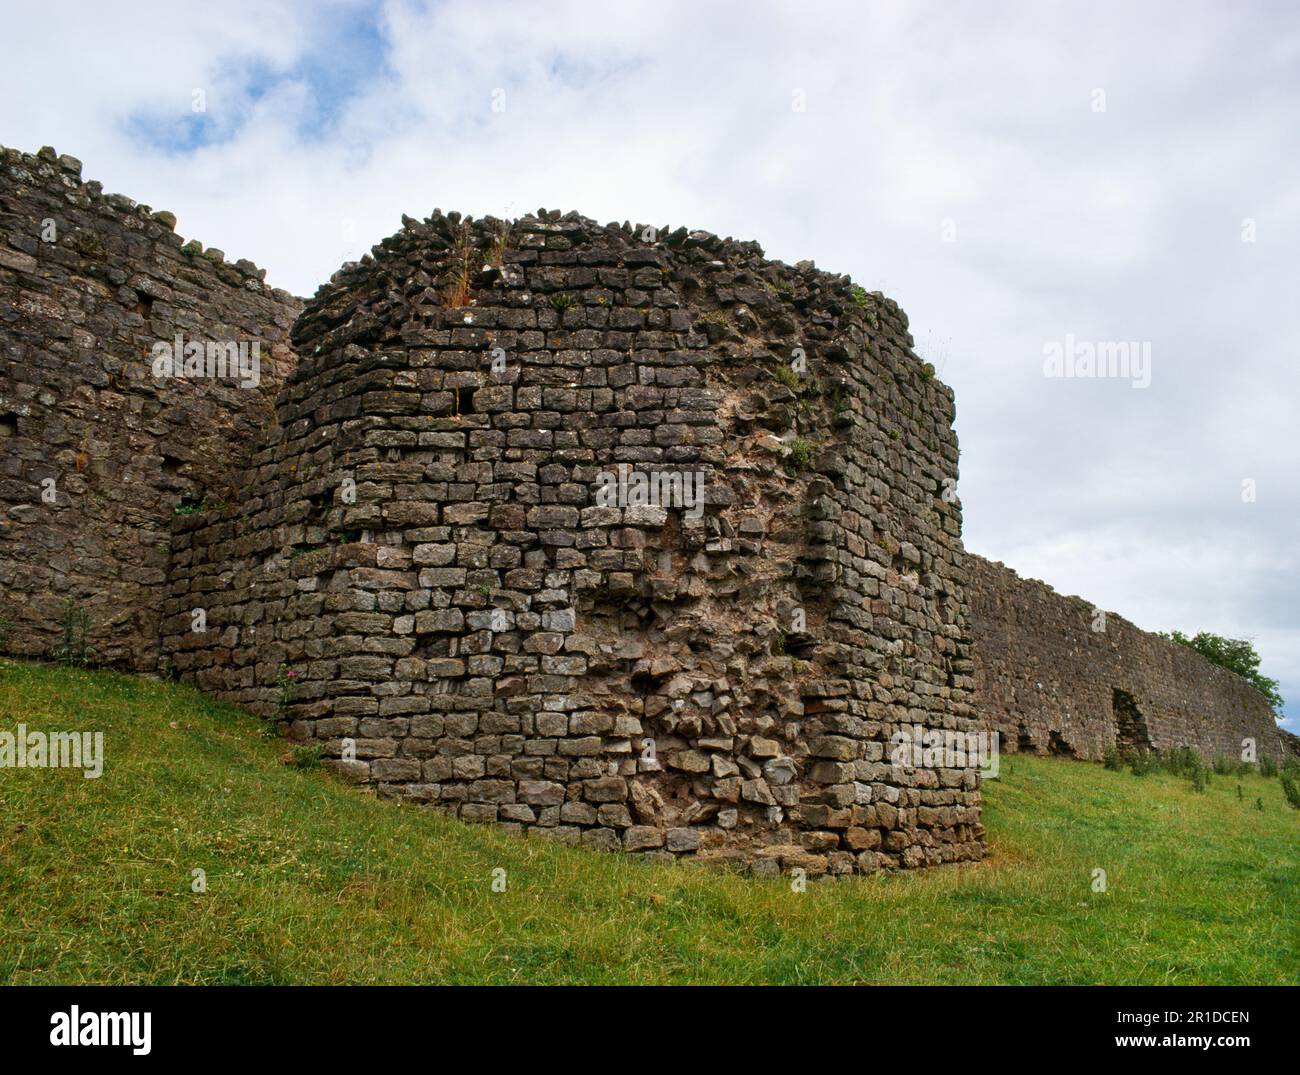 Sehen Sie die am besten erhaltene polygonale Bastion, die an der C4.AD S-Mauer der römischen Stadt Caerwent (Venta Silurum), Monmouthshire, Wales, Großbritannien, angebracht wurde. Stockfoto